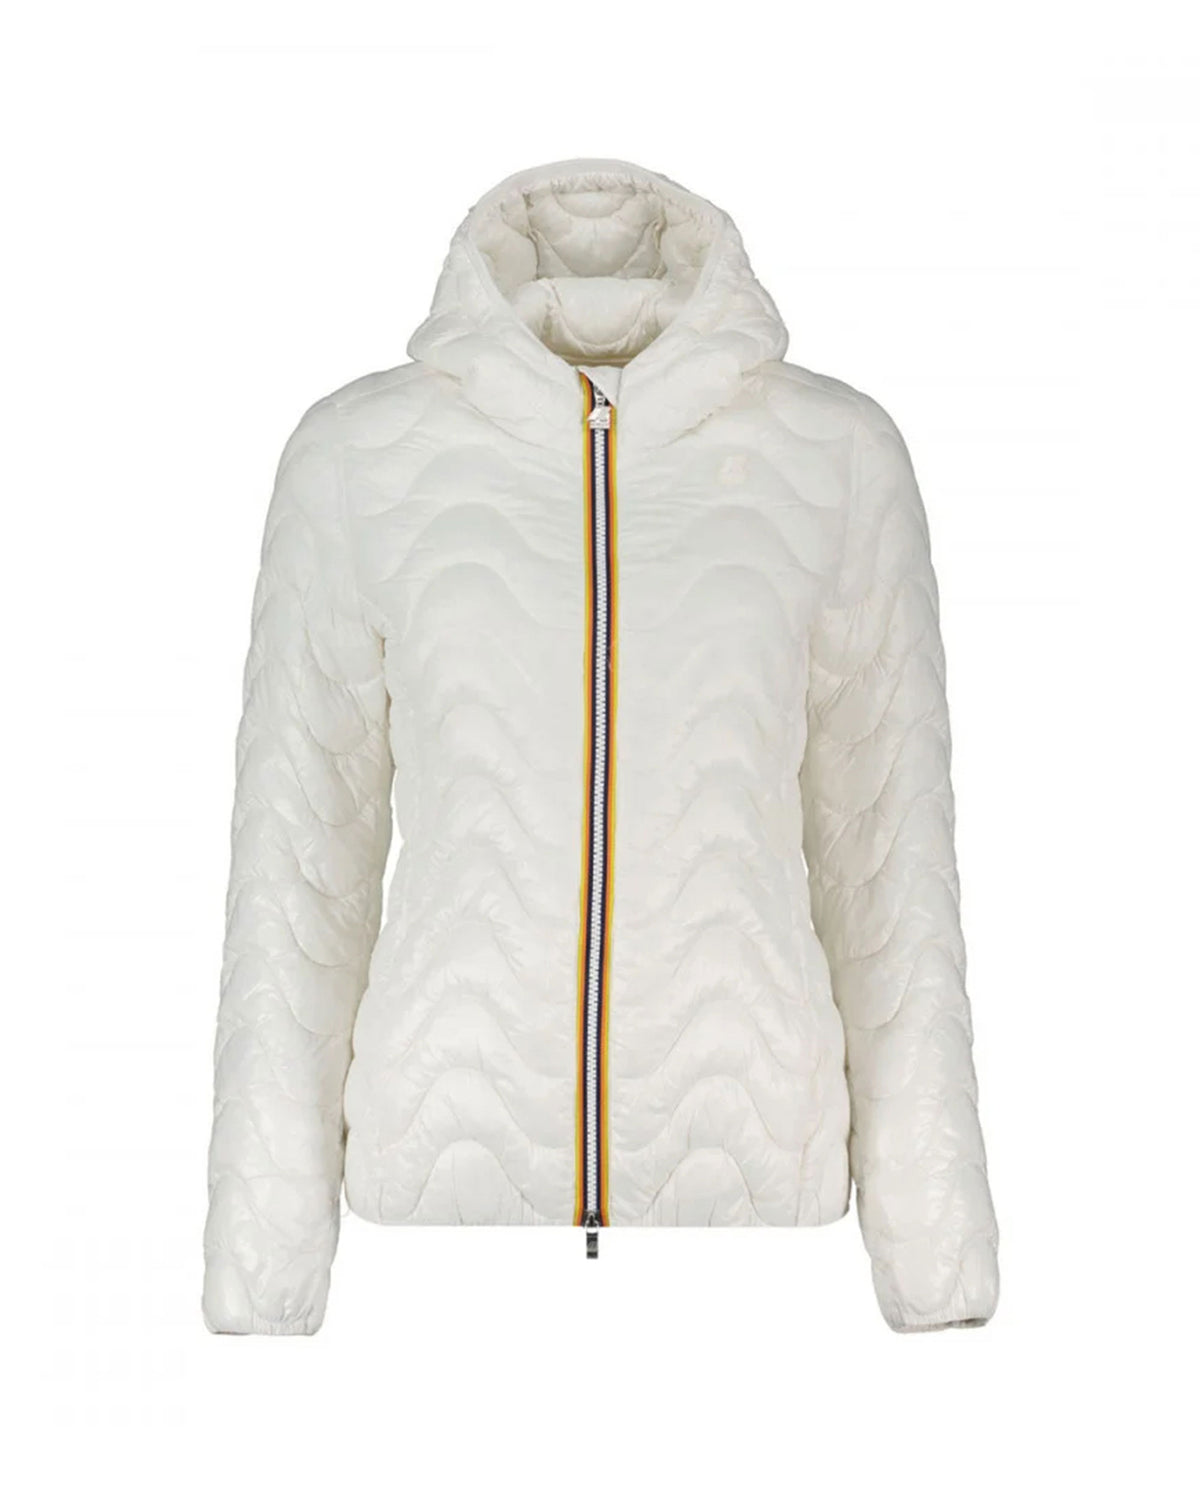 Woman's Jacket K-Way Lily Eco Warm White